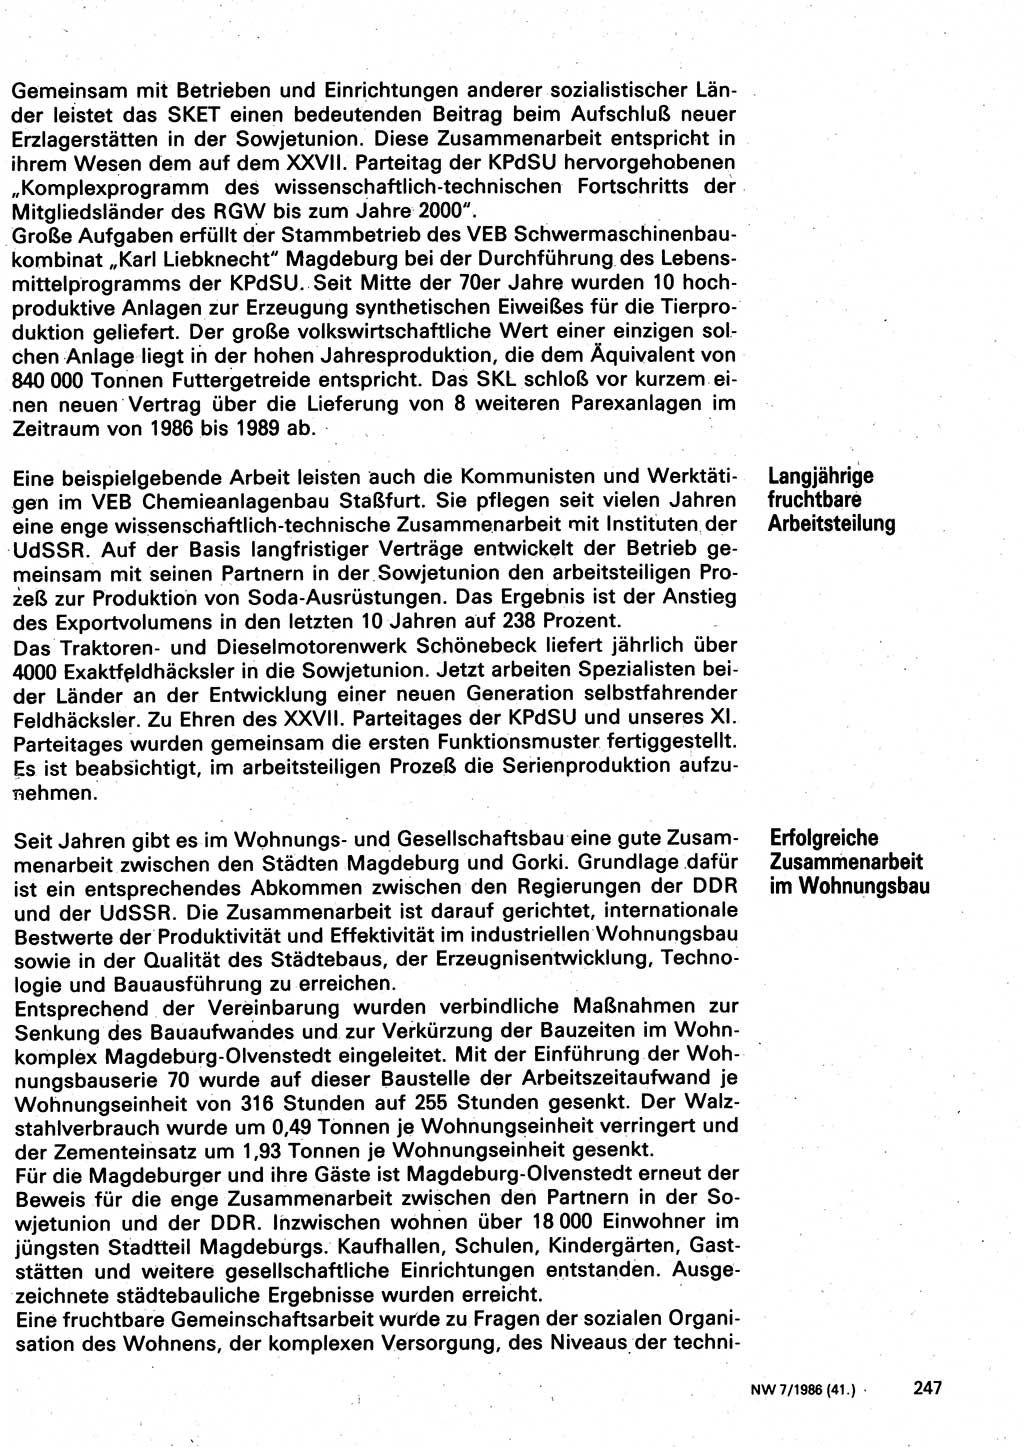 Neuer Weg (NW), Organ des Zentralkomitees (ZK) der SED (Sozialistische Einheitspartei Deutschlands) für Fragen des Parteilebens, 41. Jahrgang [Deutsche Demokratische Republik (DDR)] 1986, Seite 247 (NW ZK SED DDR 1986, S. 247)